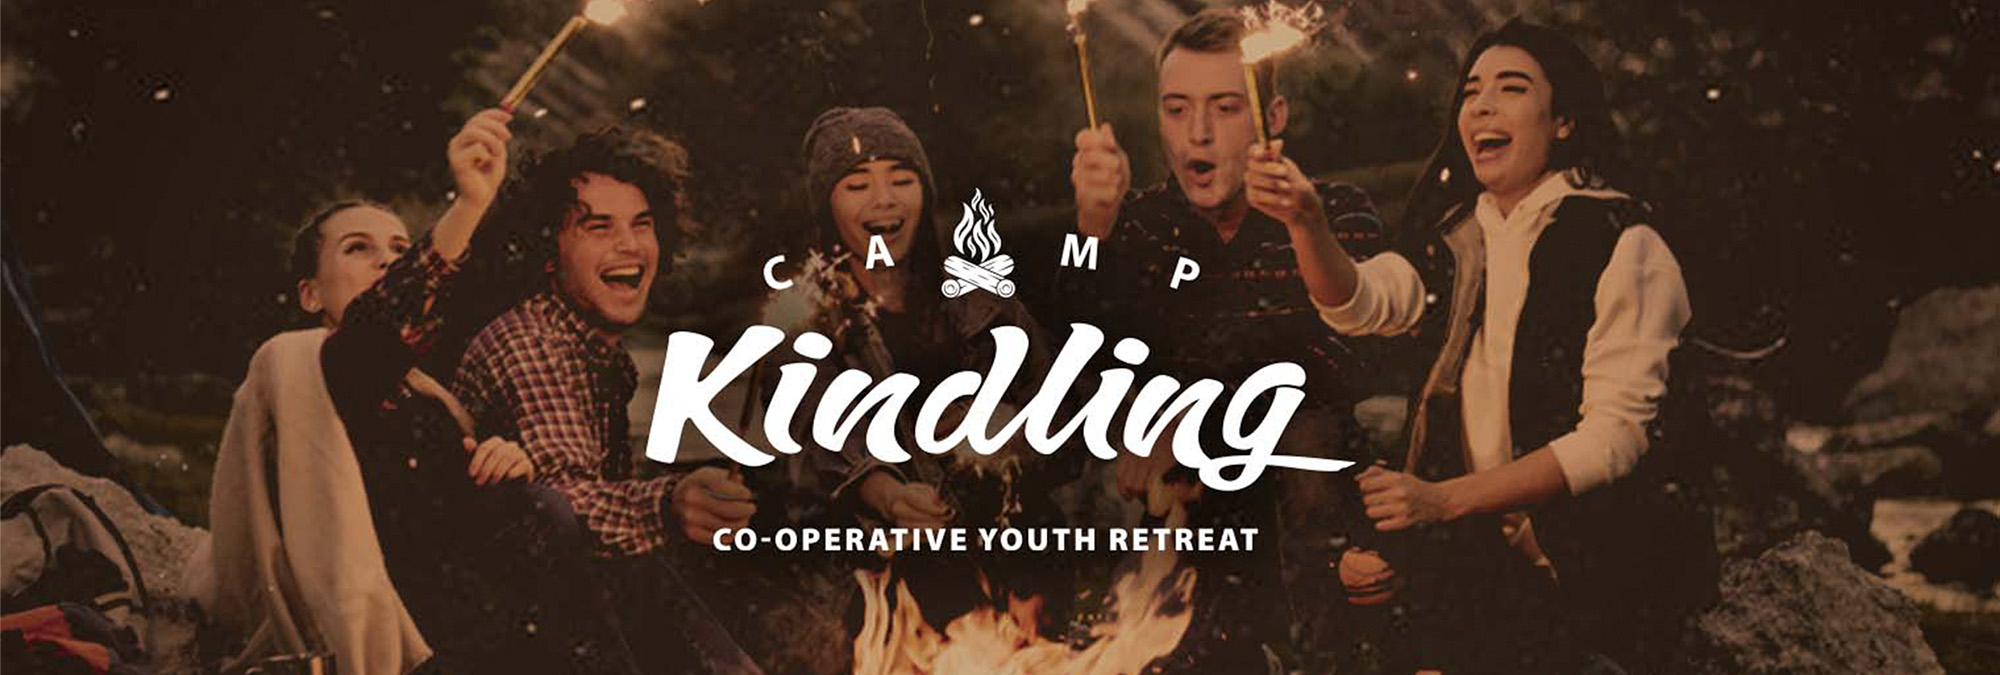 Camp Kindling_You Belong Here_Header